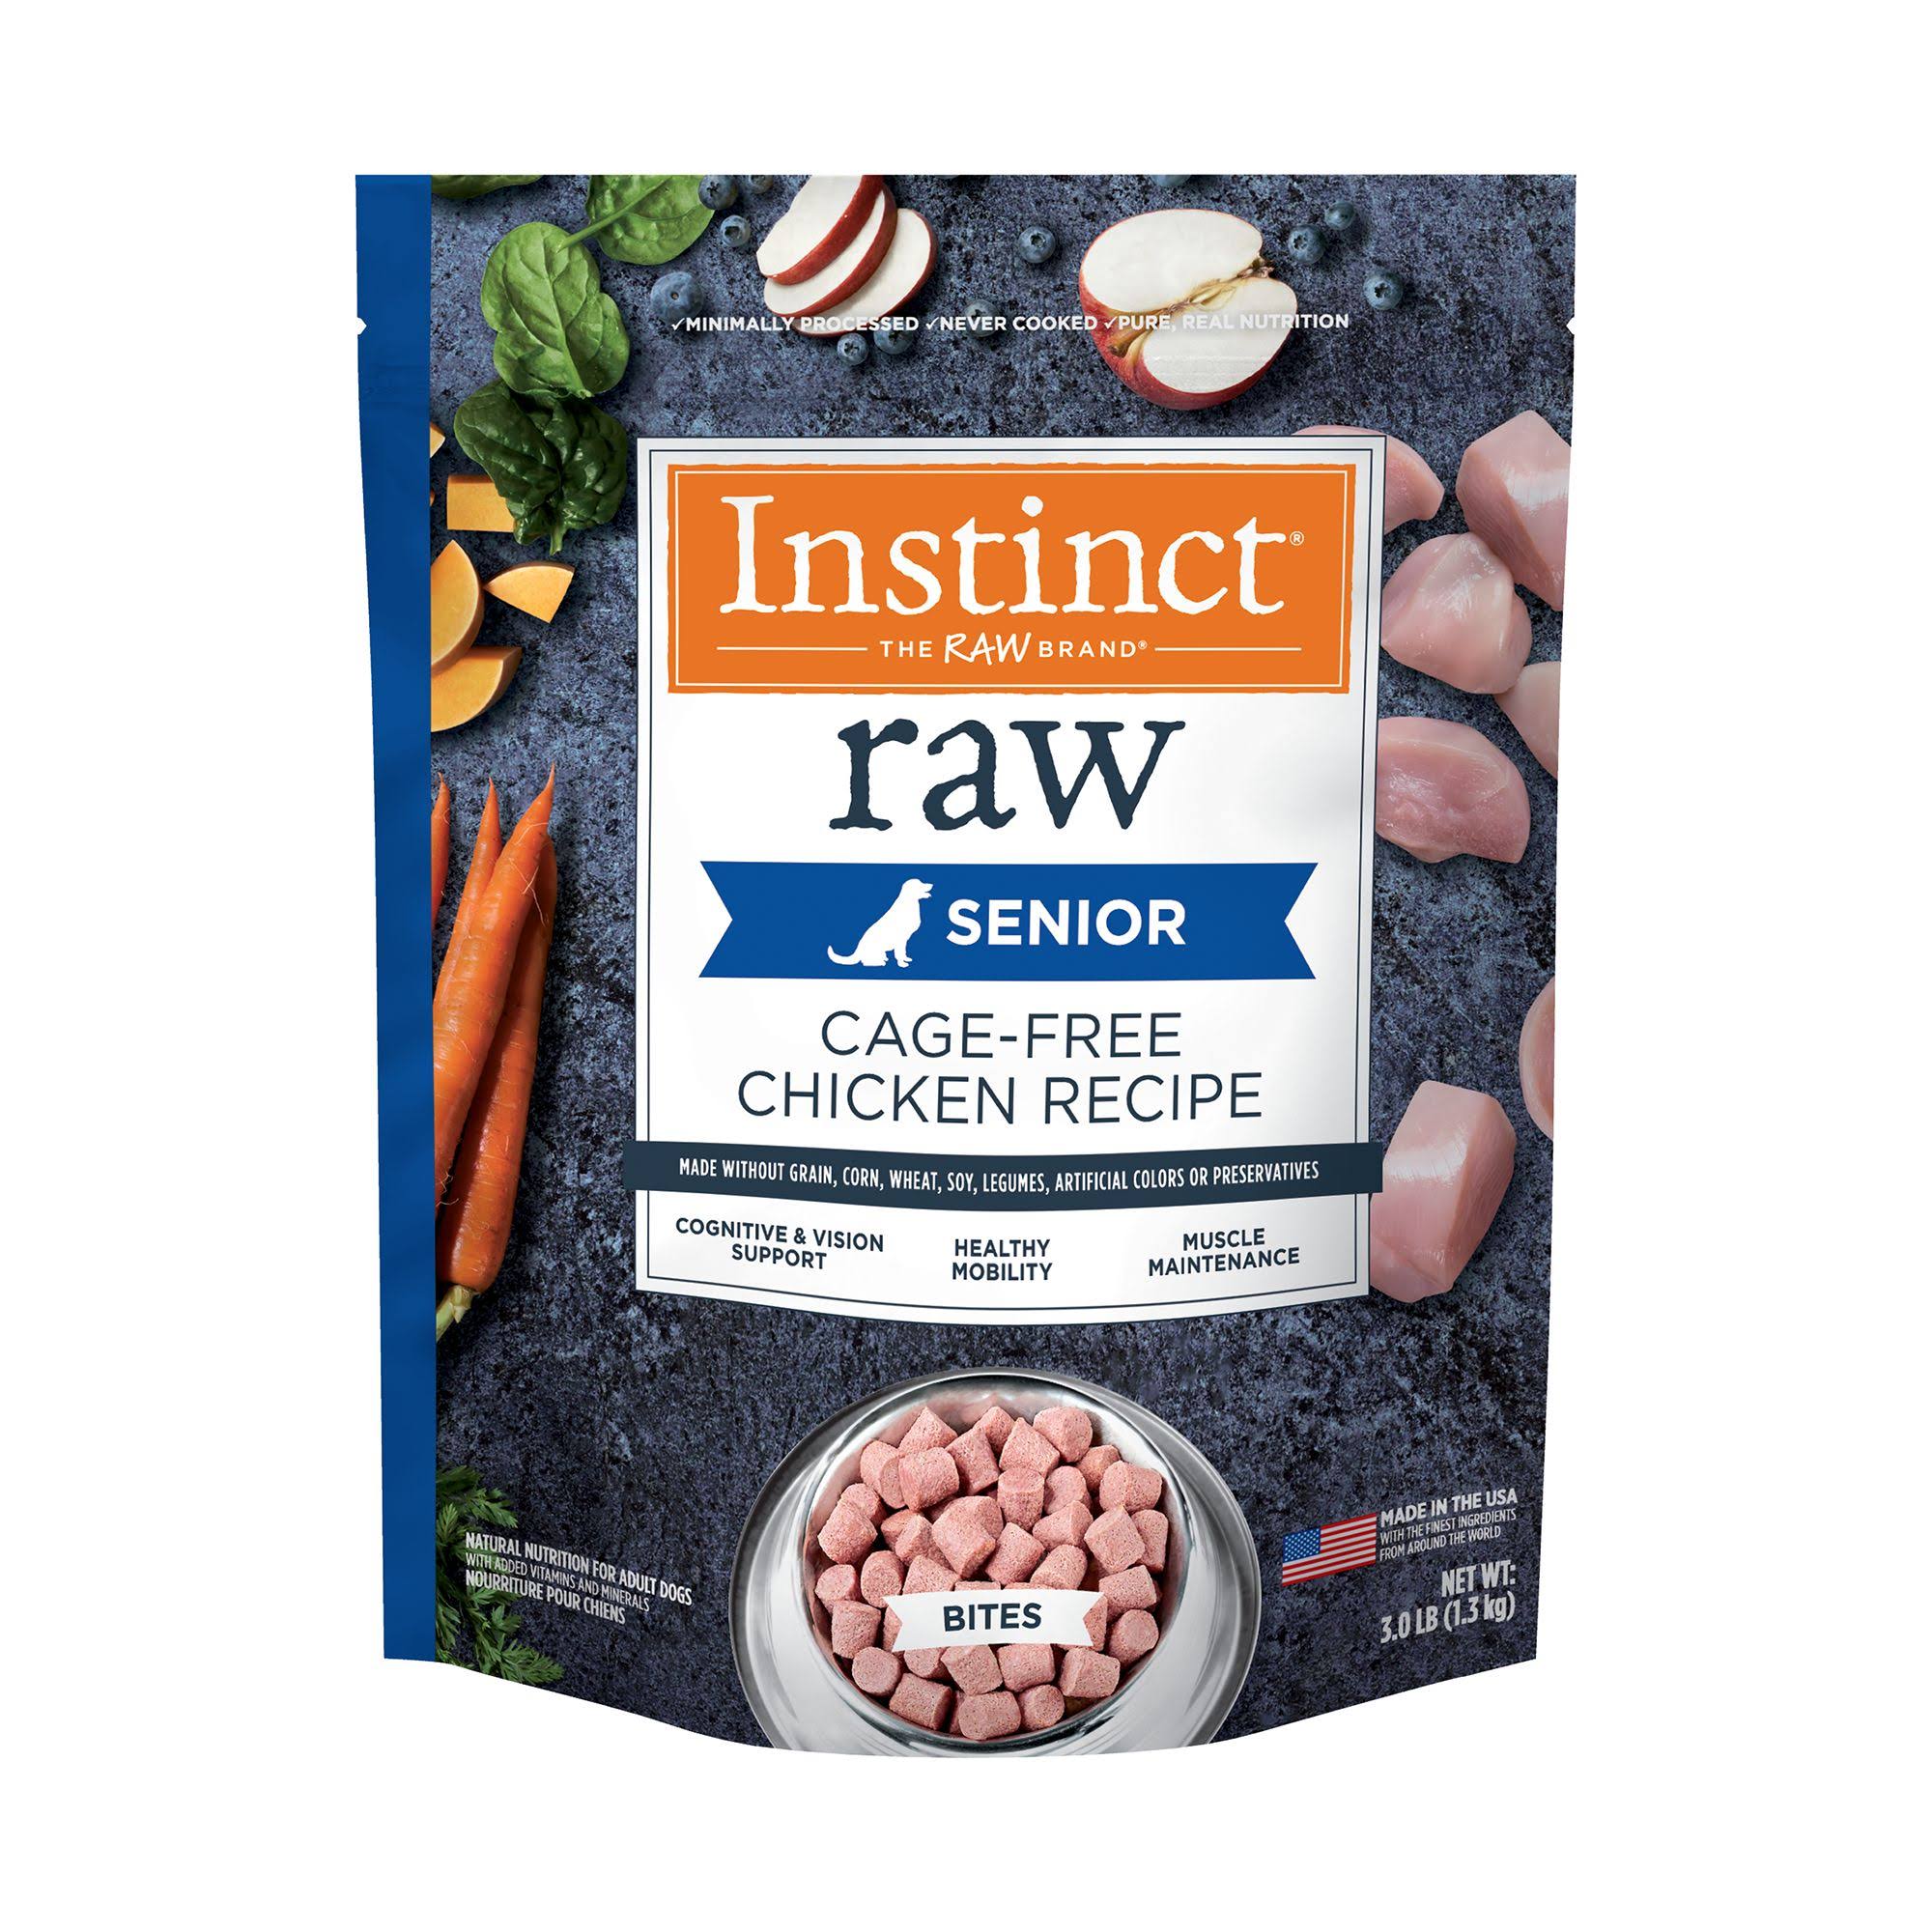 Instinct Raw Senior Frozen Dog Food - Natural, Cage-Free Chicken